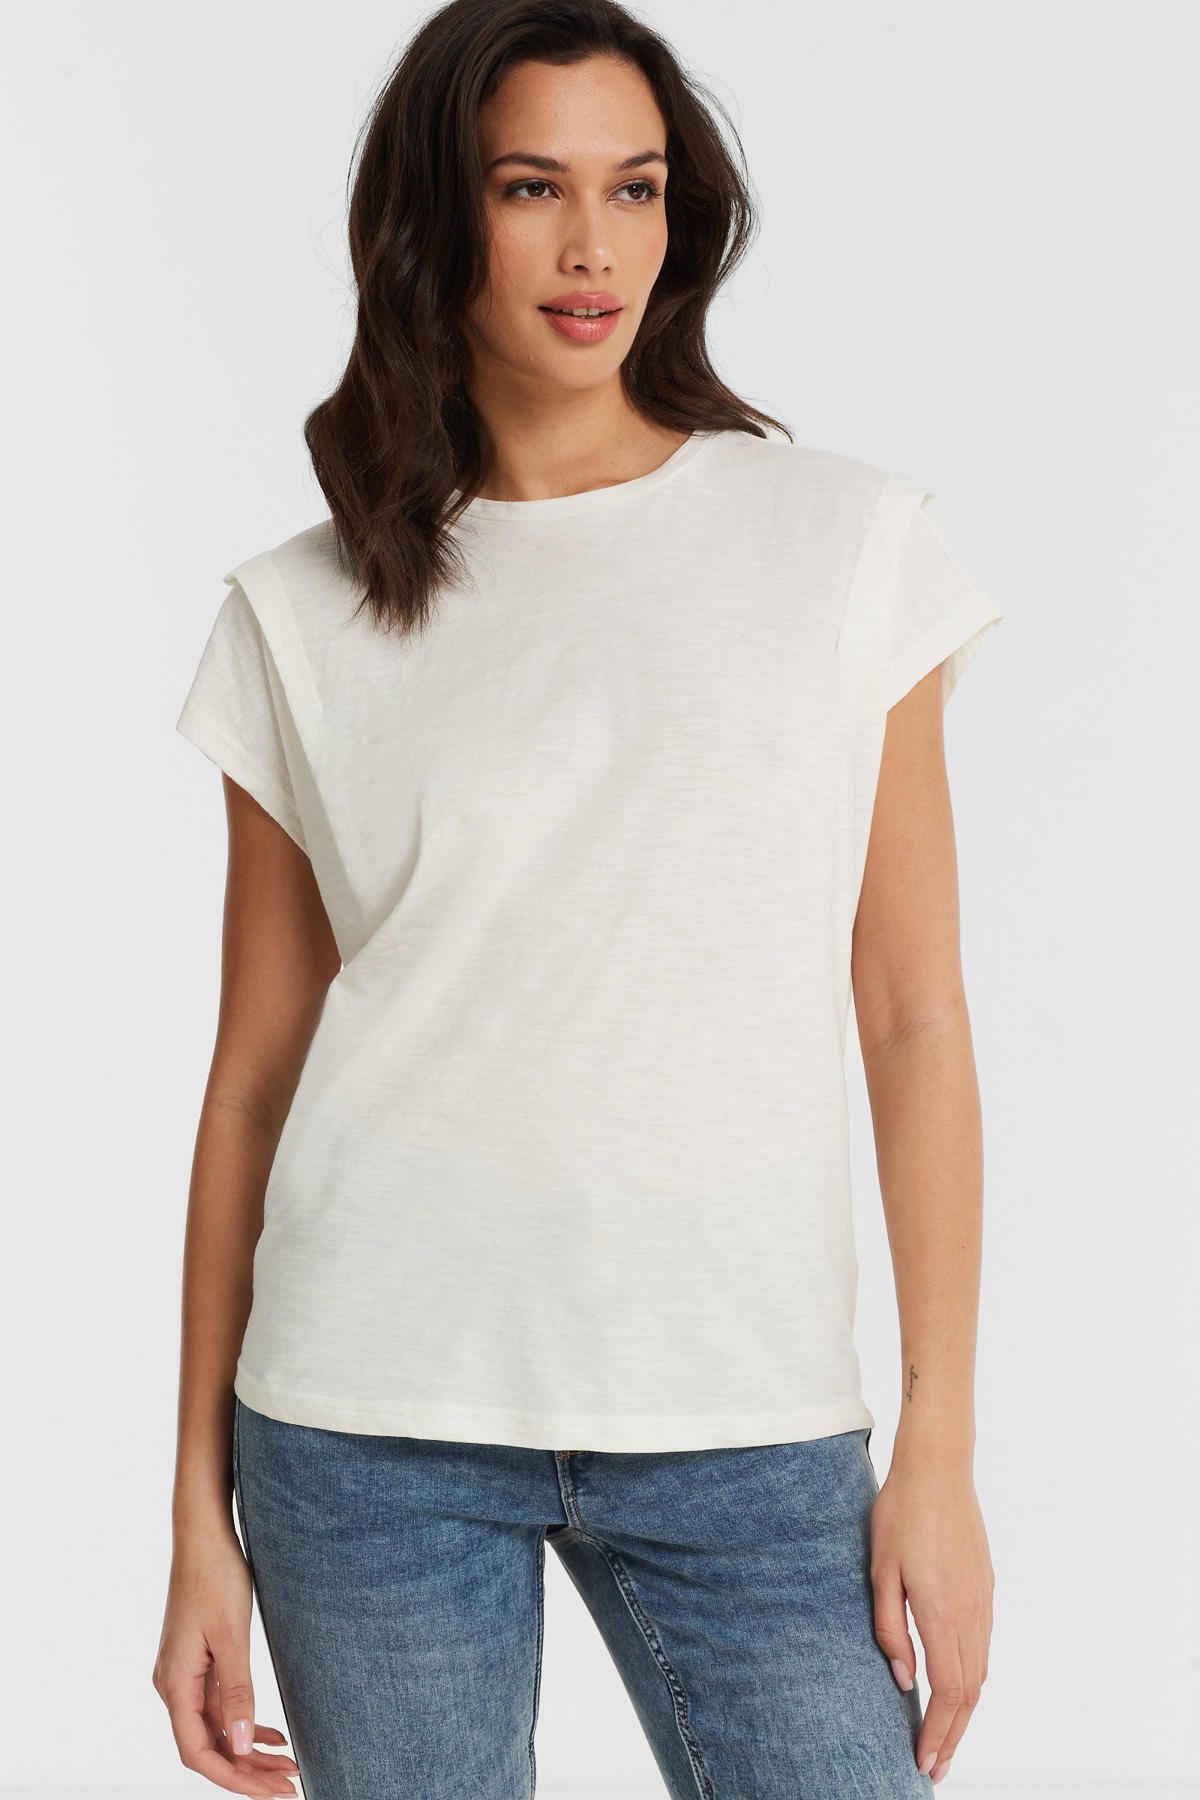 🌭Chien Chaud Delicatessen White T-Shirt - Unisex